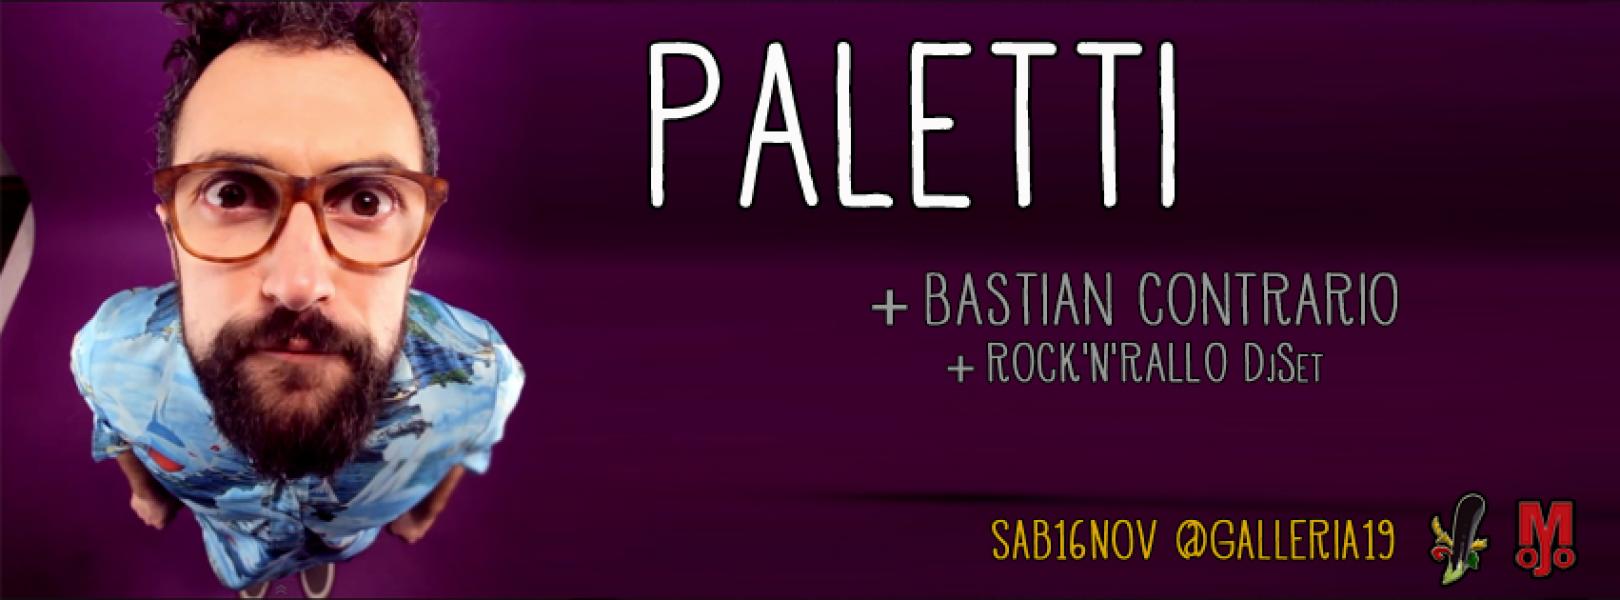 paletti-galleria19